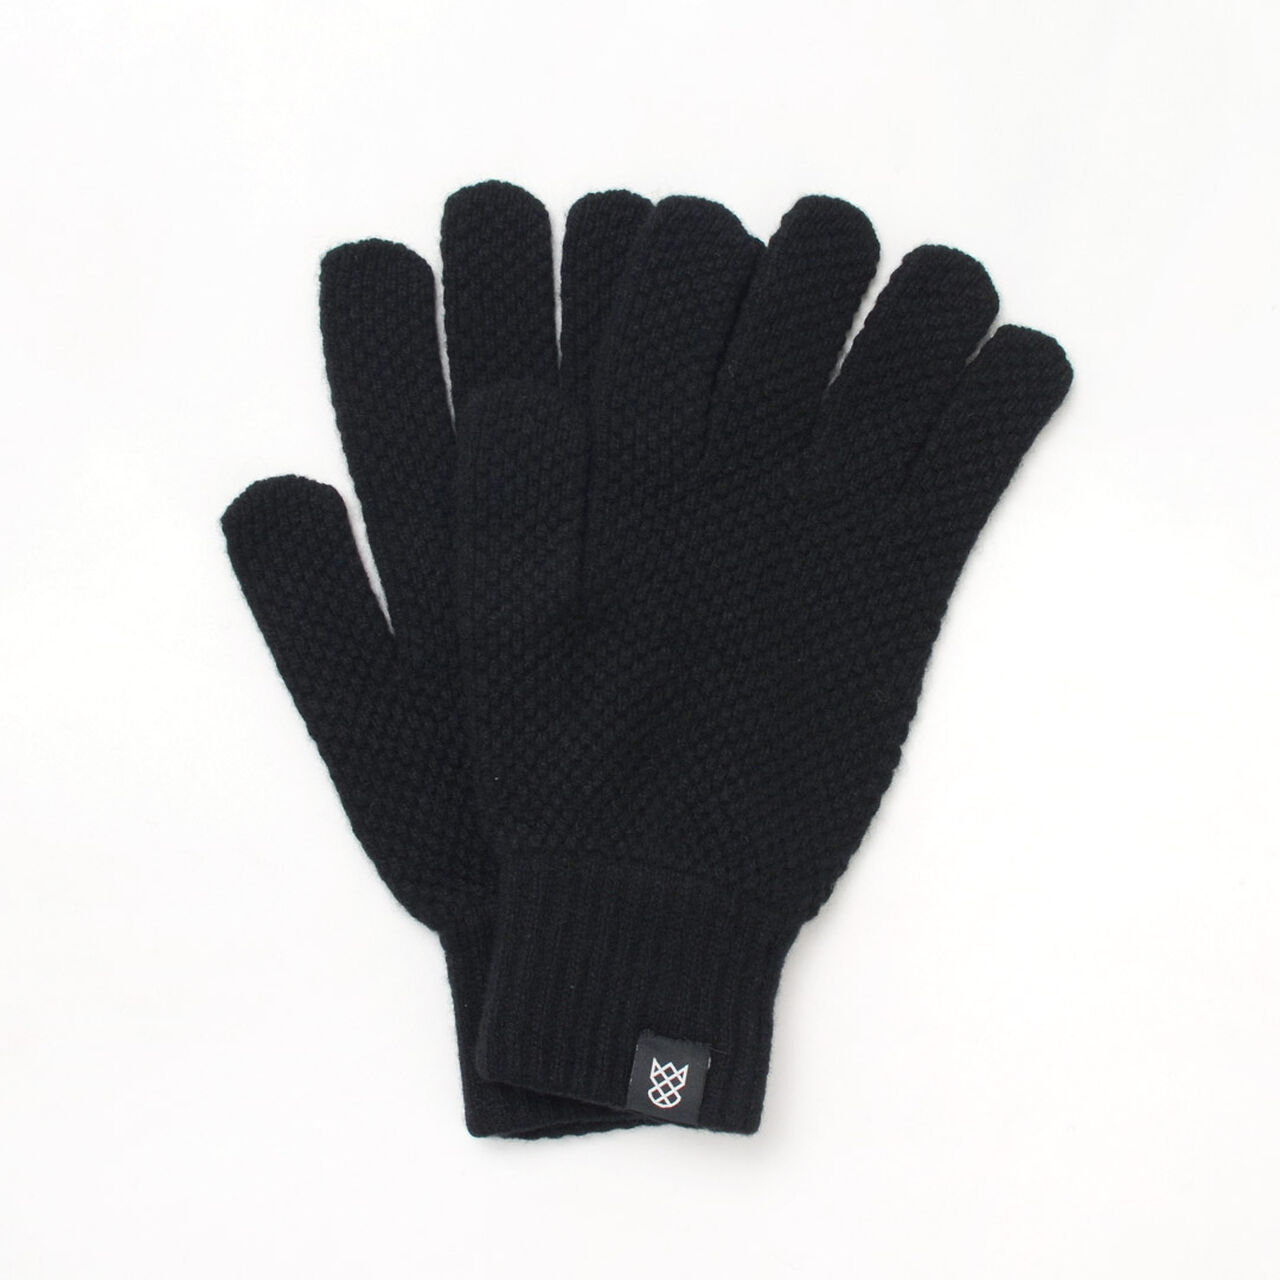 Special Order Tuck Stitch Knit Gloves,Black, large image number 0